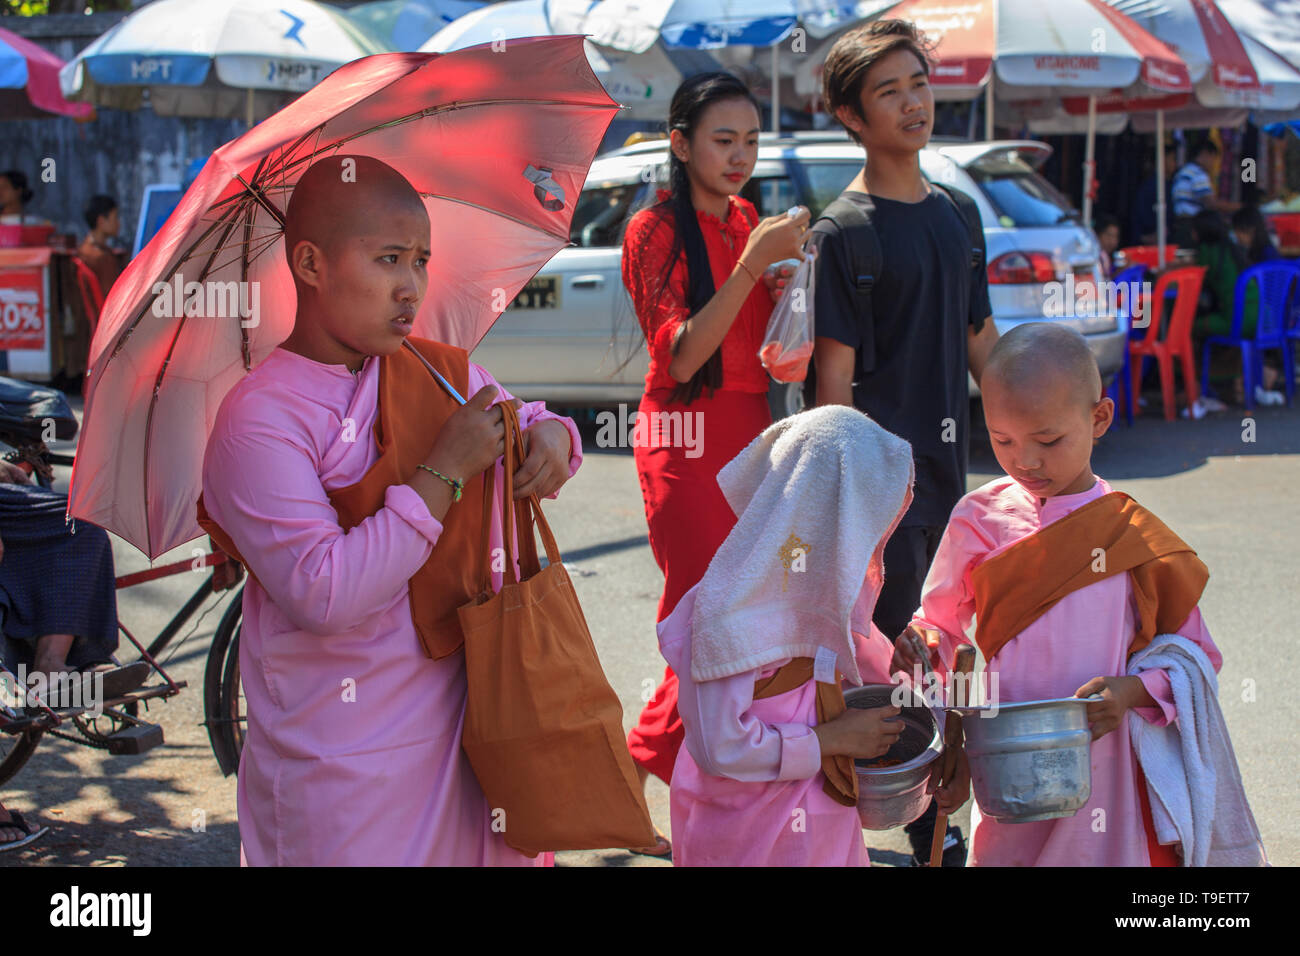 Los jóvenes thilashin en Yangon Foto de stock